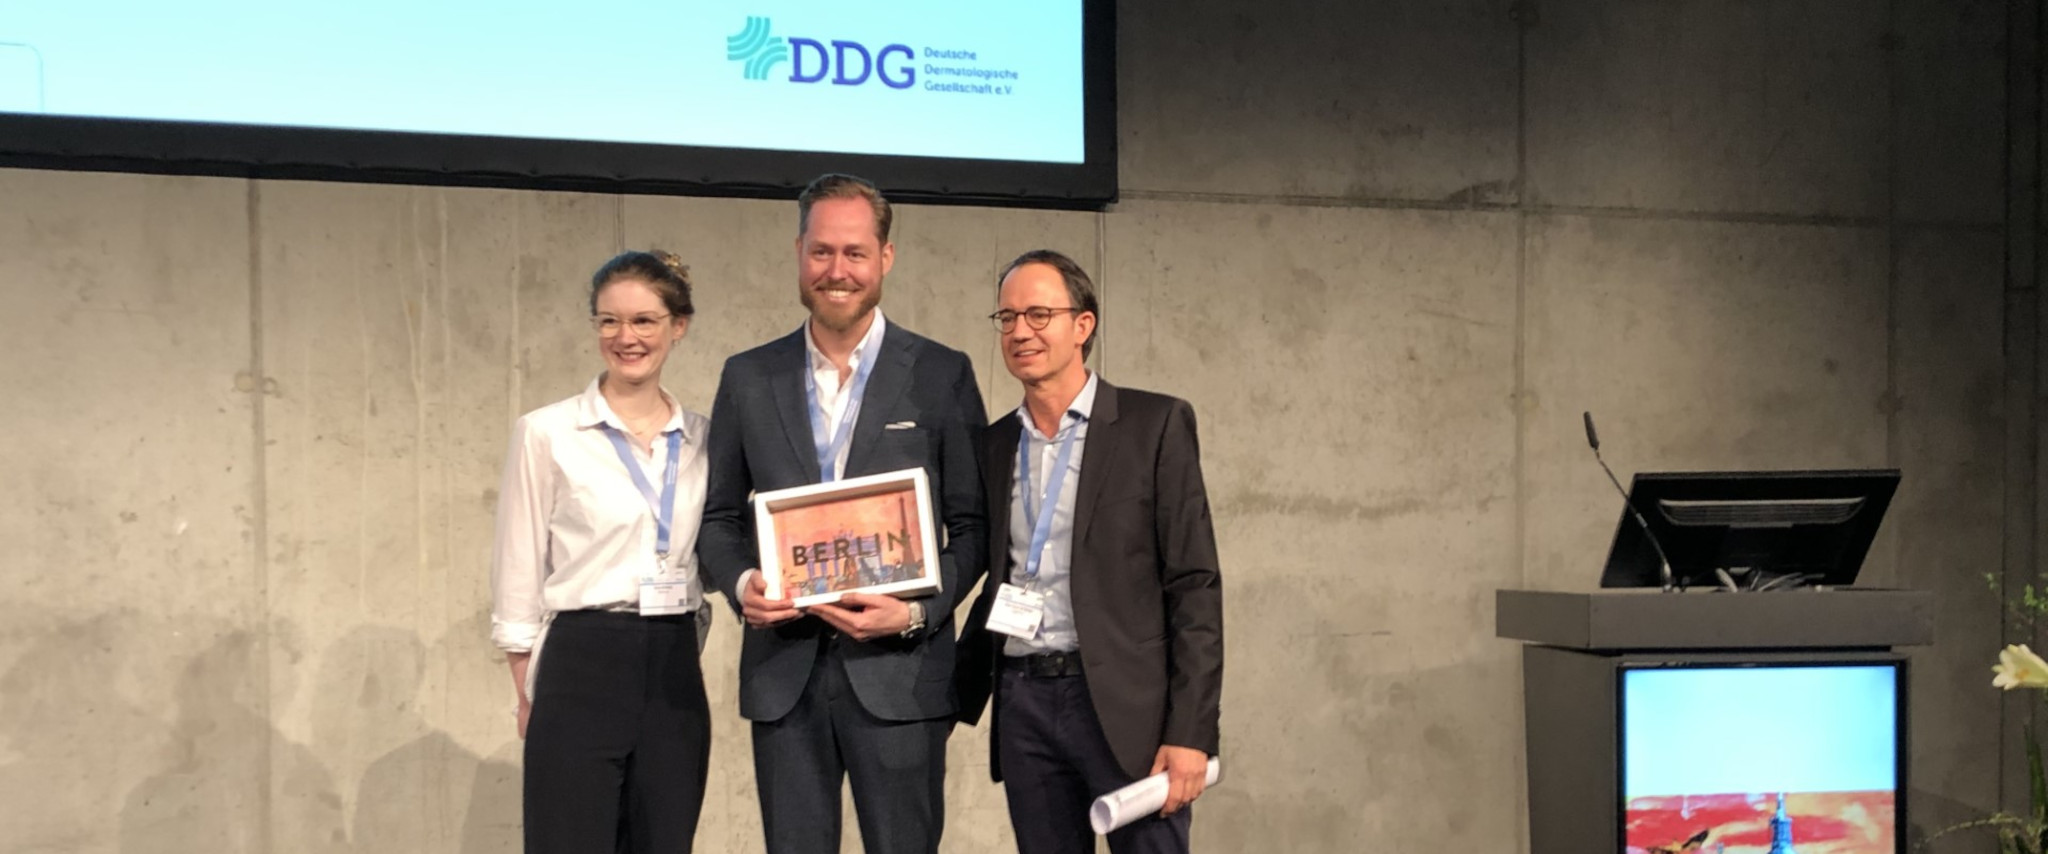 Wissenschaftspreis an PD Dr. Valentin Schäfer in Berlin verliehen